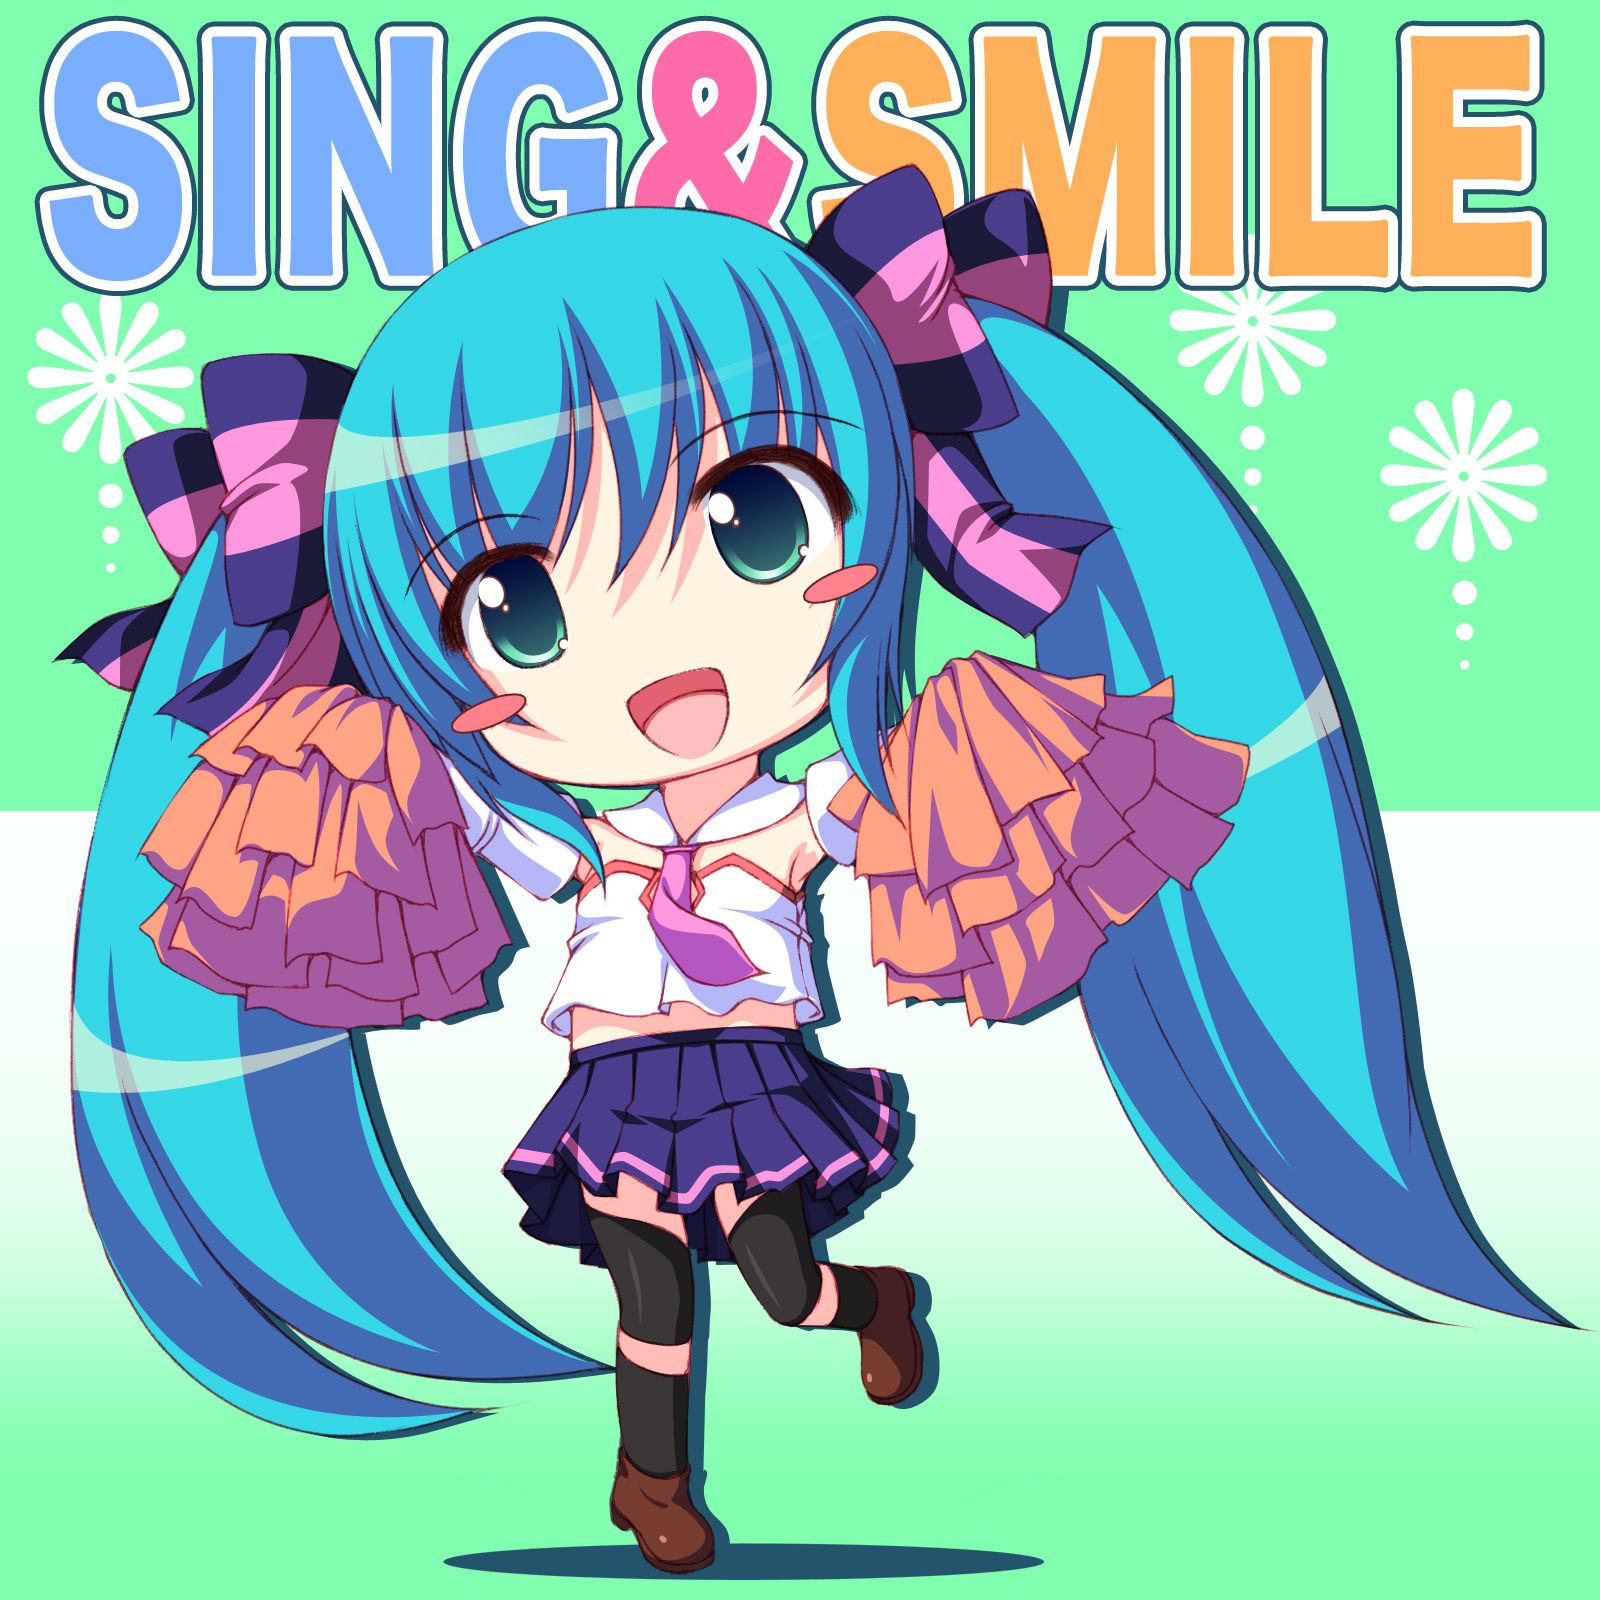 sing&smile插画图片壁纸